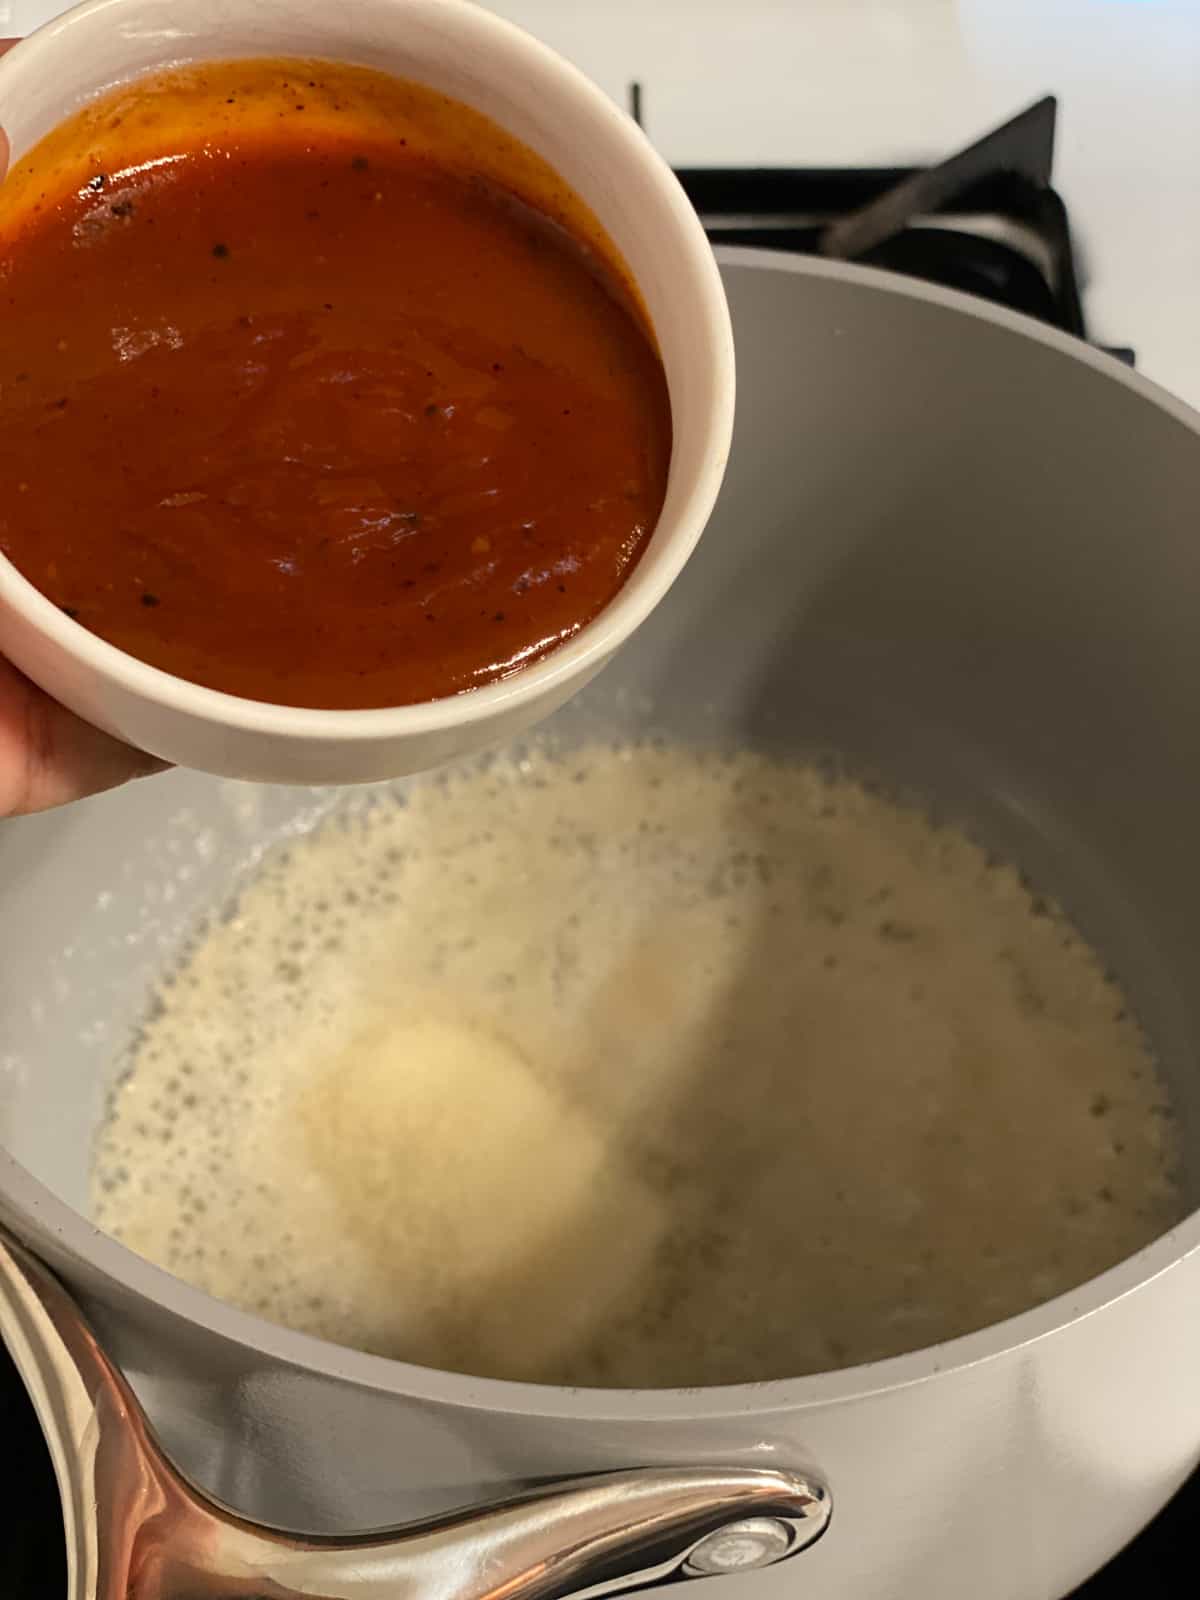 process shot of adding hot sauce to pan